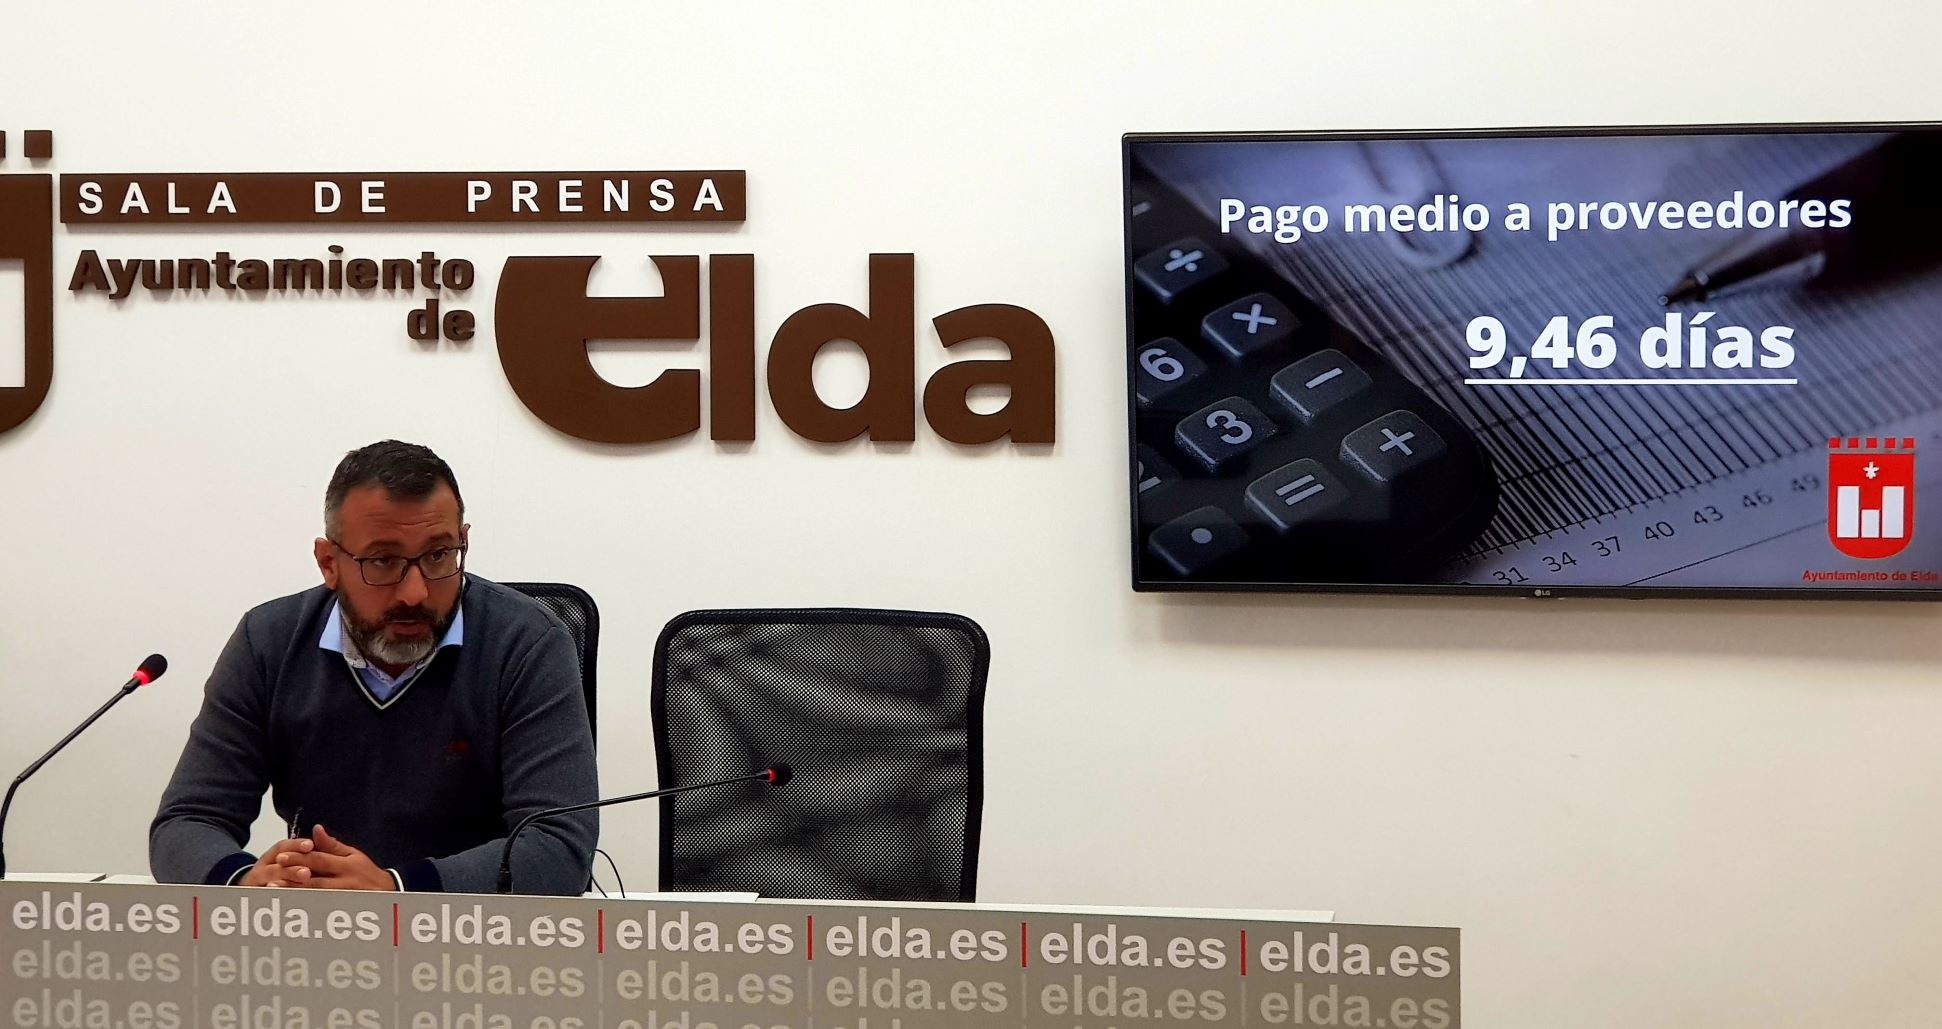 El Ayuntamiento de Elda sitúa en 9,46 días el Plazo Medio de Pago a proveedores